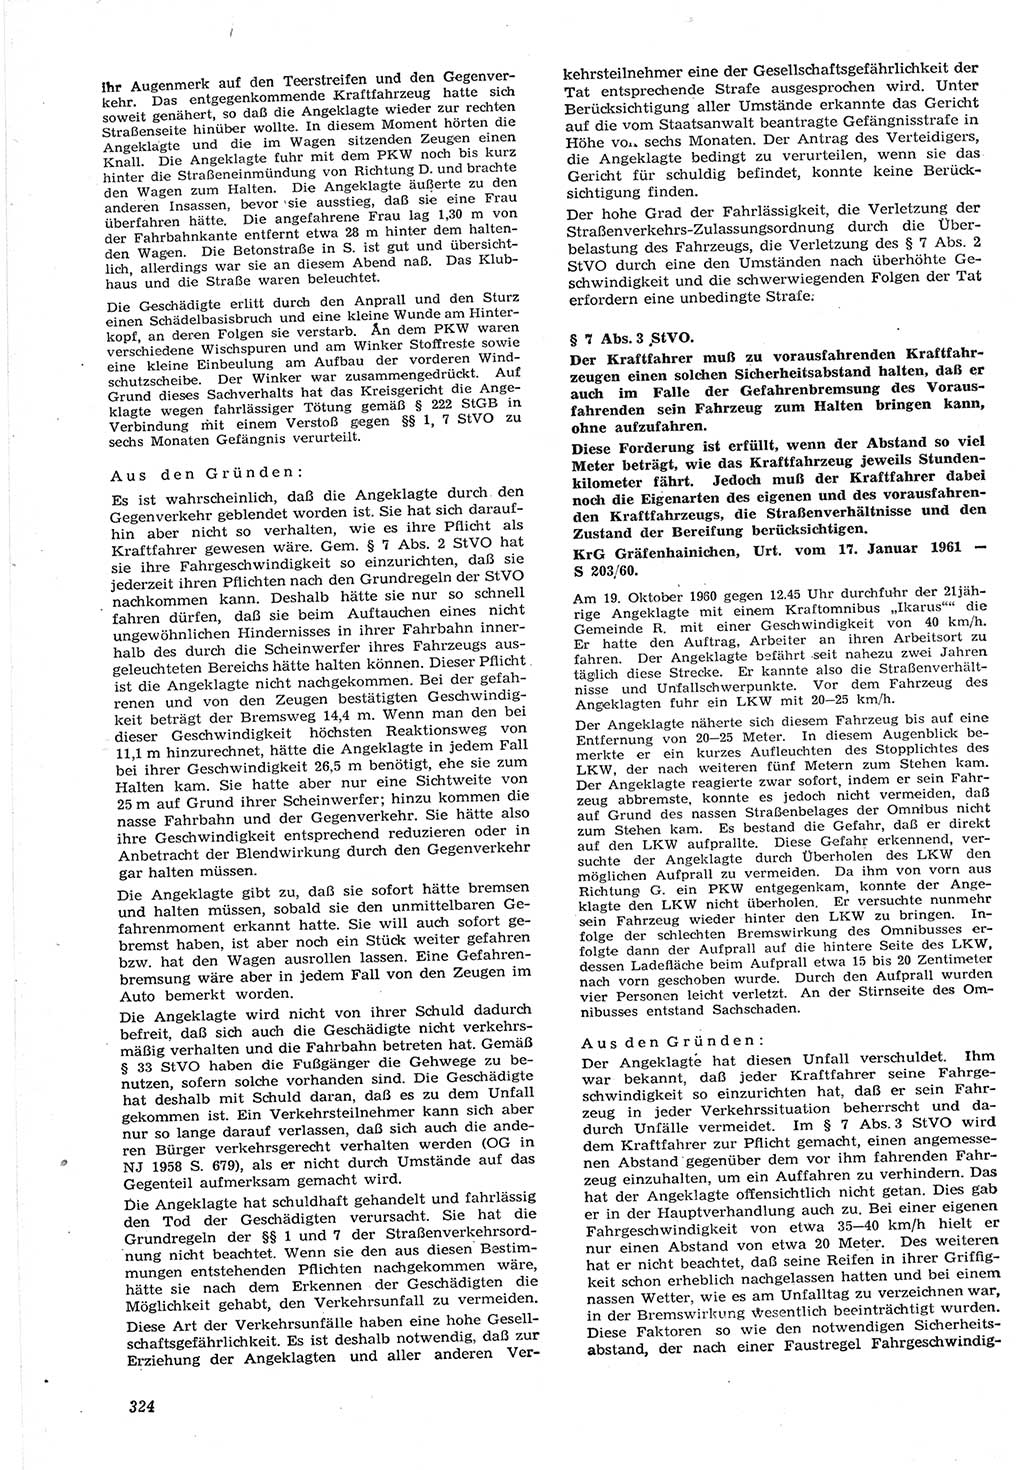 Neue Justiz (NJ), Zeitschrift für Recht und Rechtswissenschaft [Deutsche Demokratische Republik (DDR)], 15. Jahrgang 1961, Seite 324 (NJ DDR 1961, S. 324)